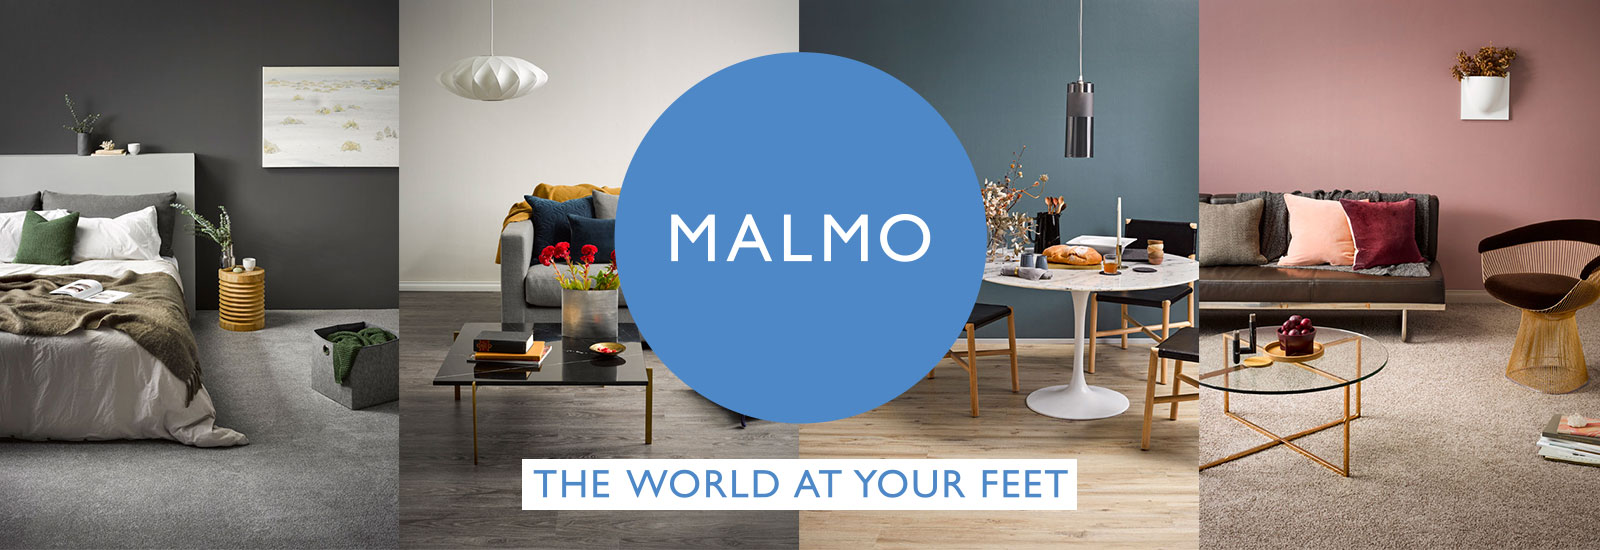 Malmo Brand Page Banner